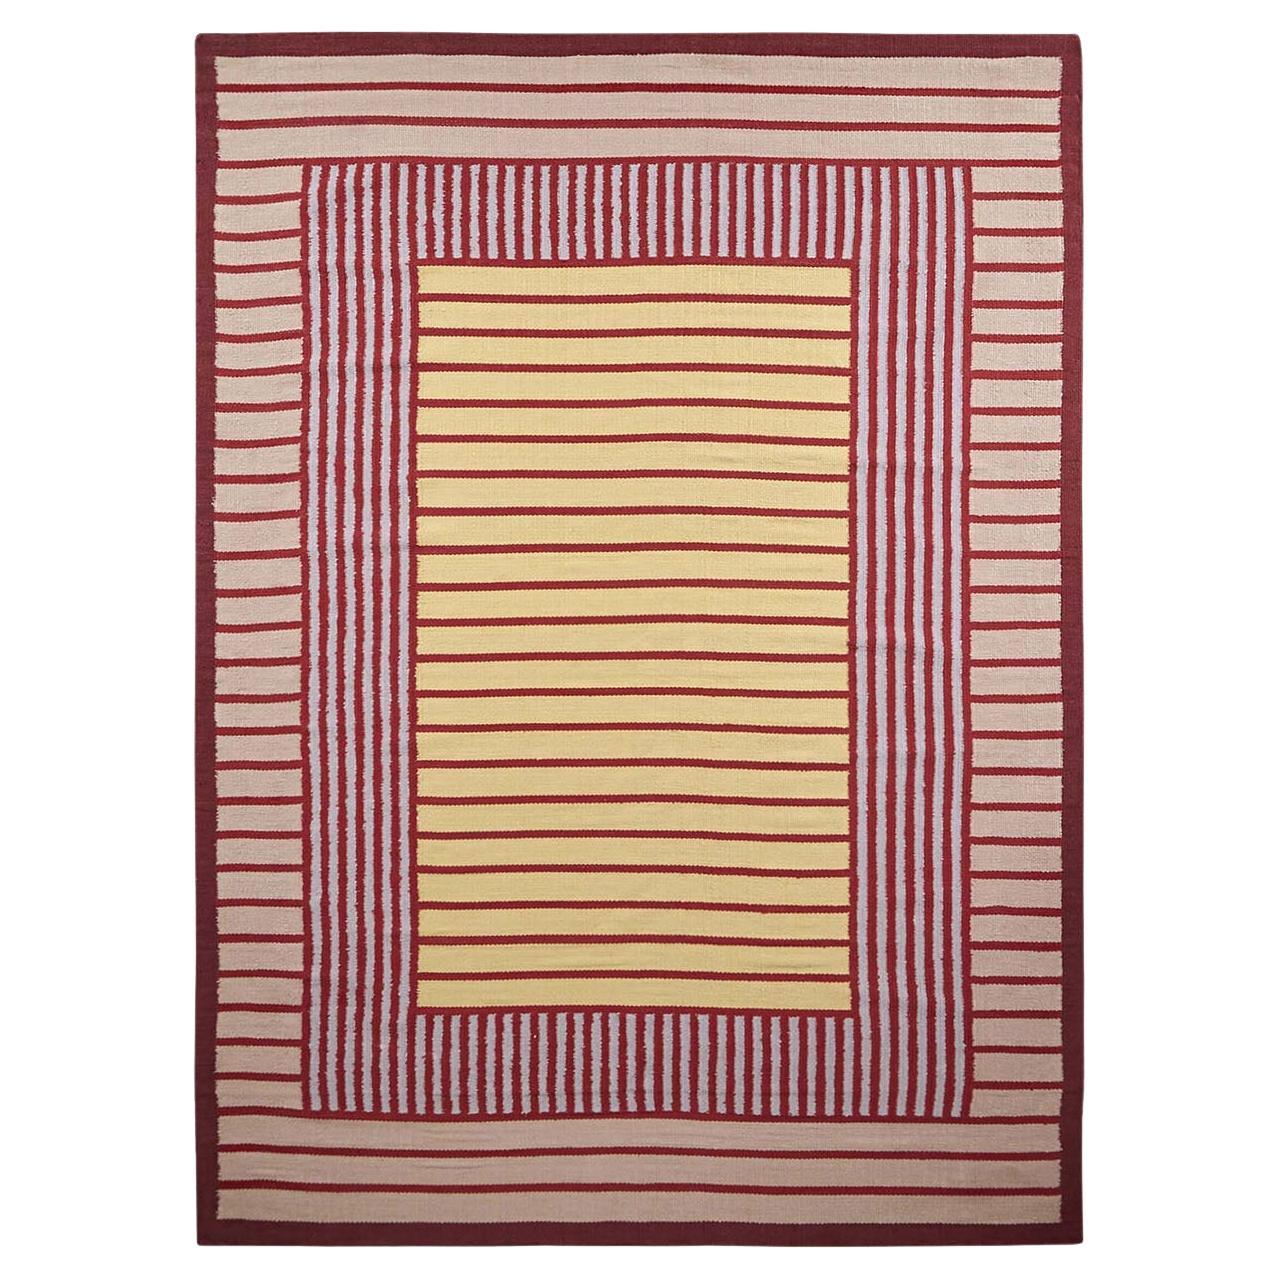 Red Yellow Hemp Carpet by Massimo Copenhagen